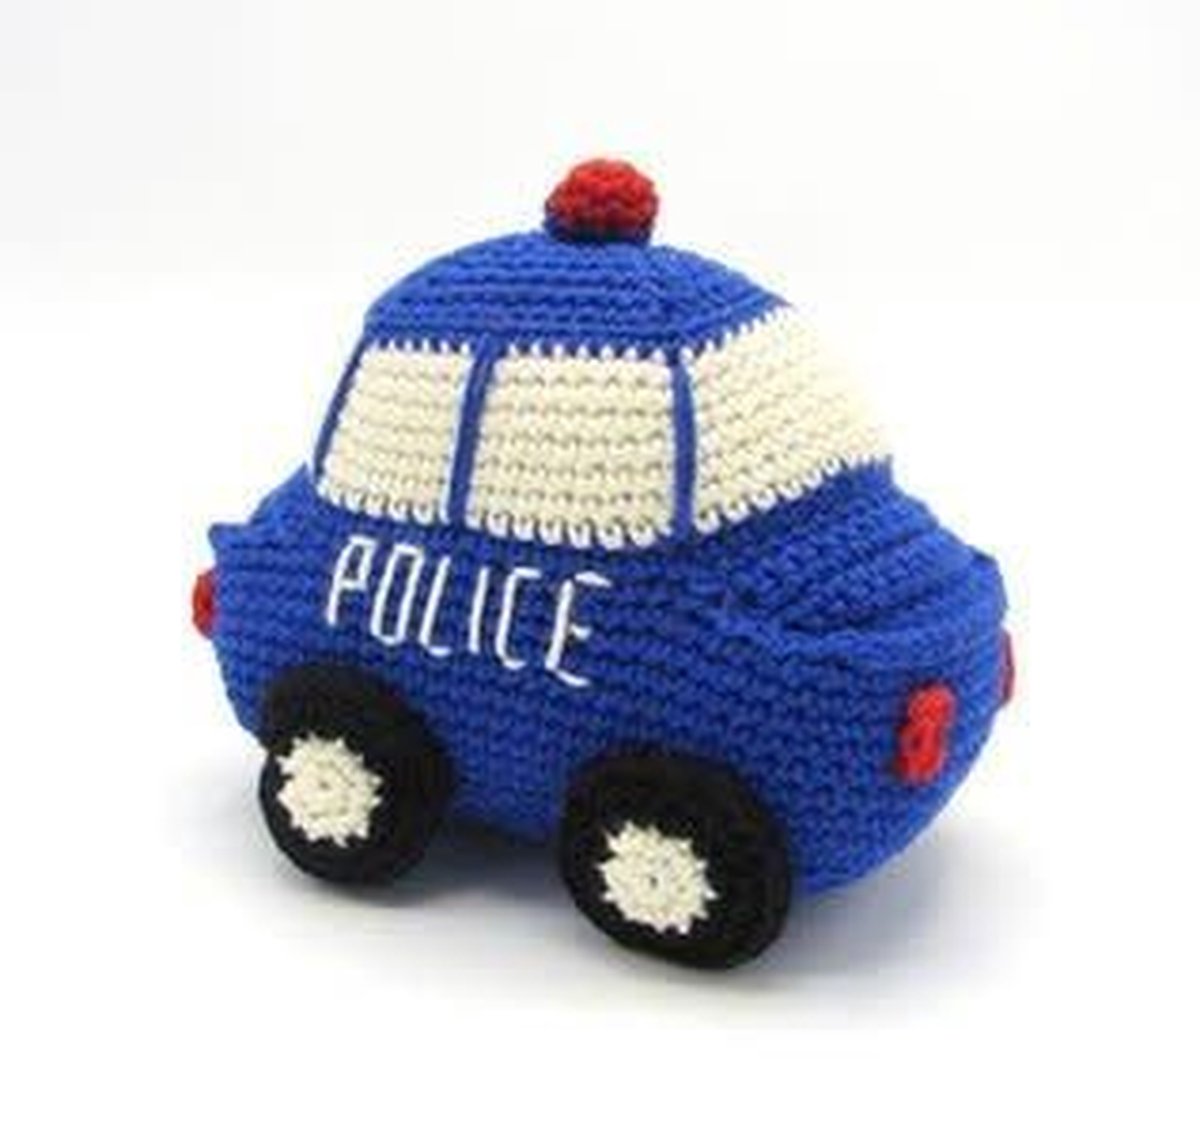 Autootjes haken - Politie auto